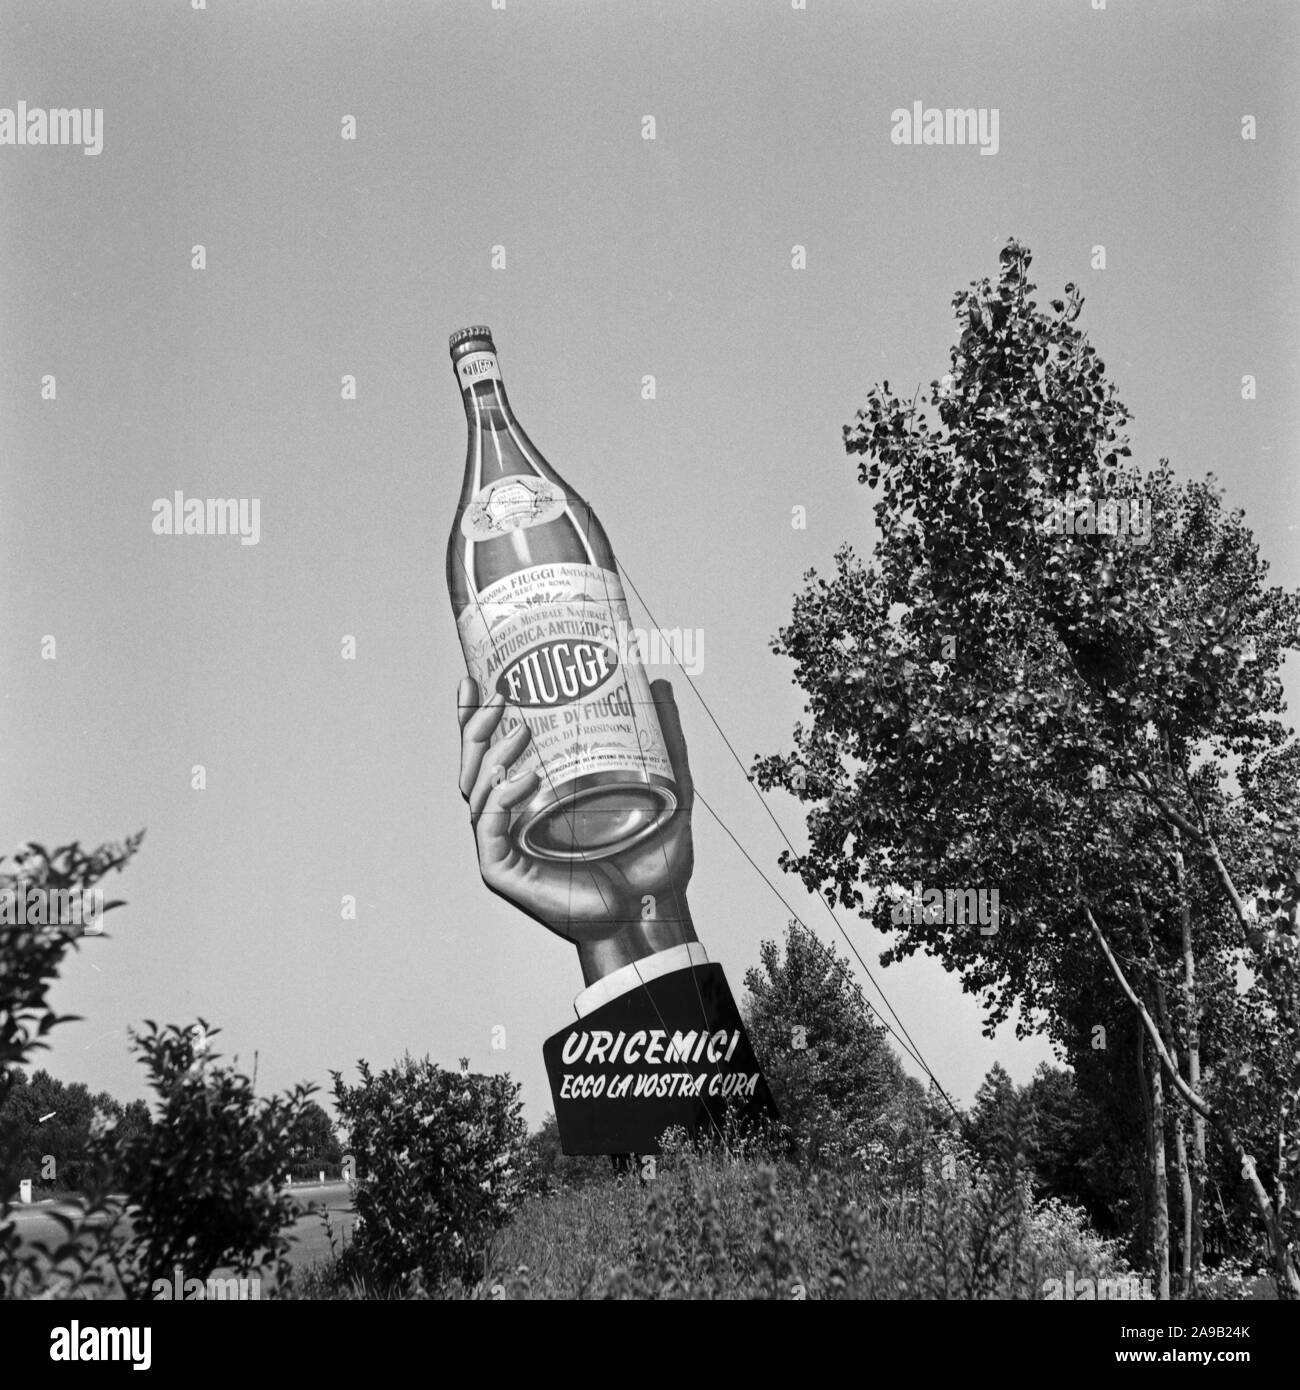 Fiuggi display advertising presso l'autostrada tra Milano e Navarra, Italia degli anni cinquanta. Foto Stock